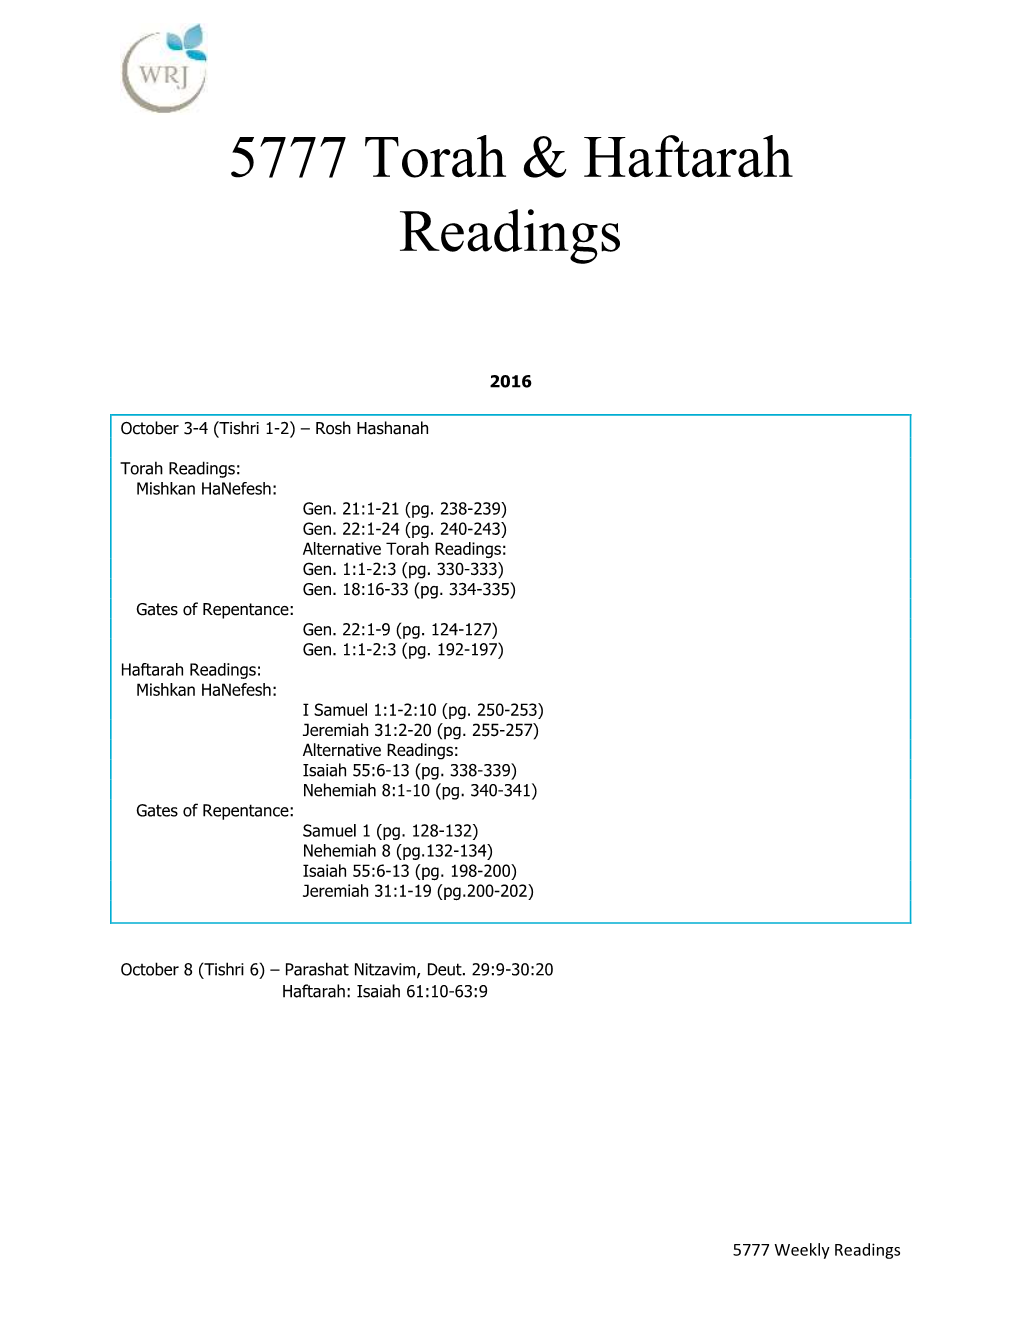 5777 Torah & Haftarah Readings